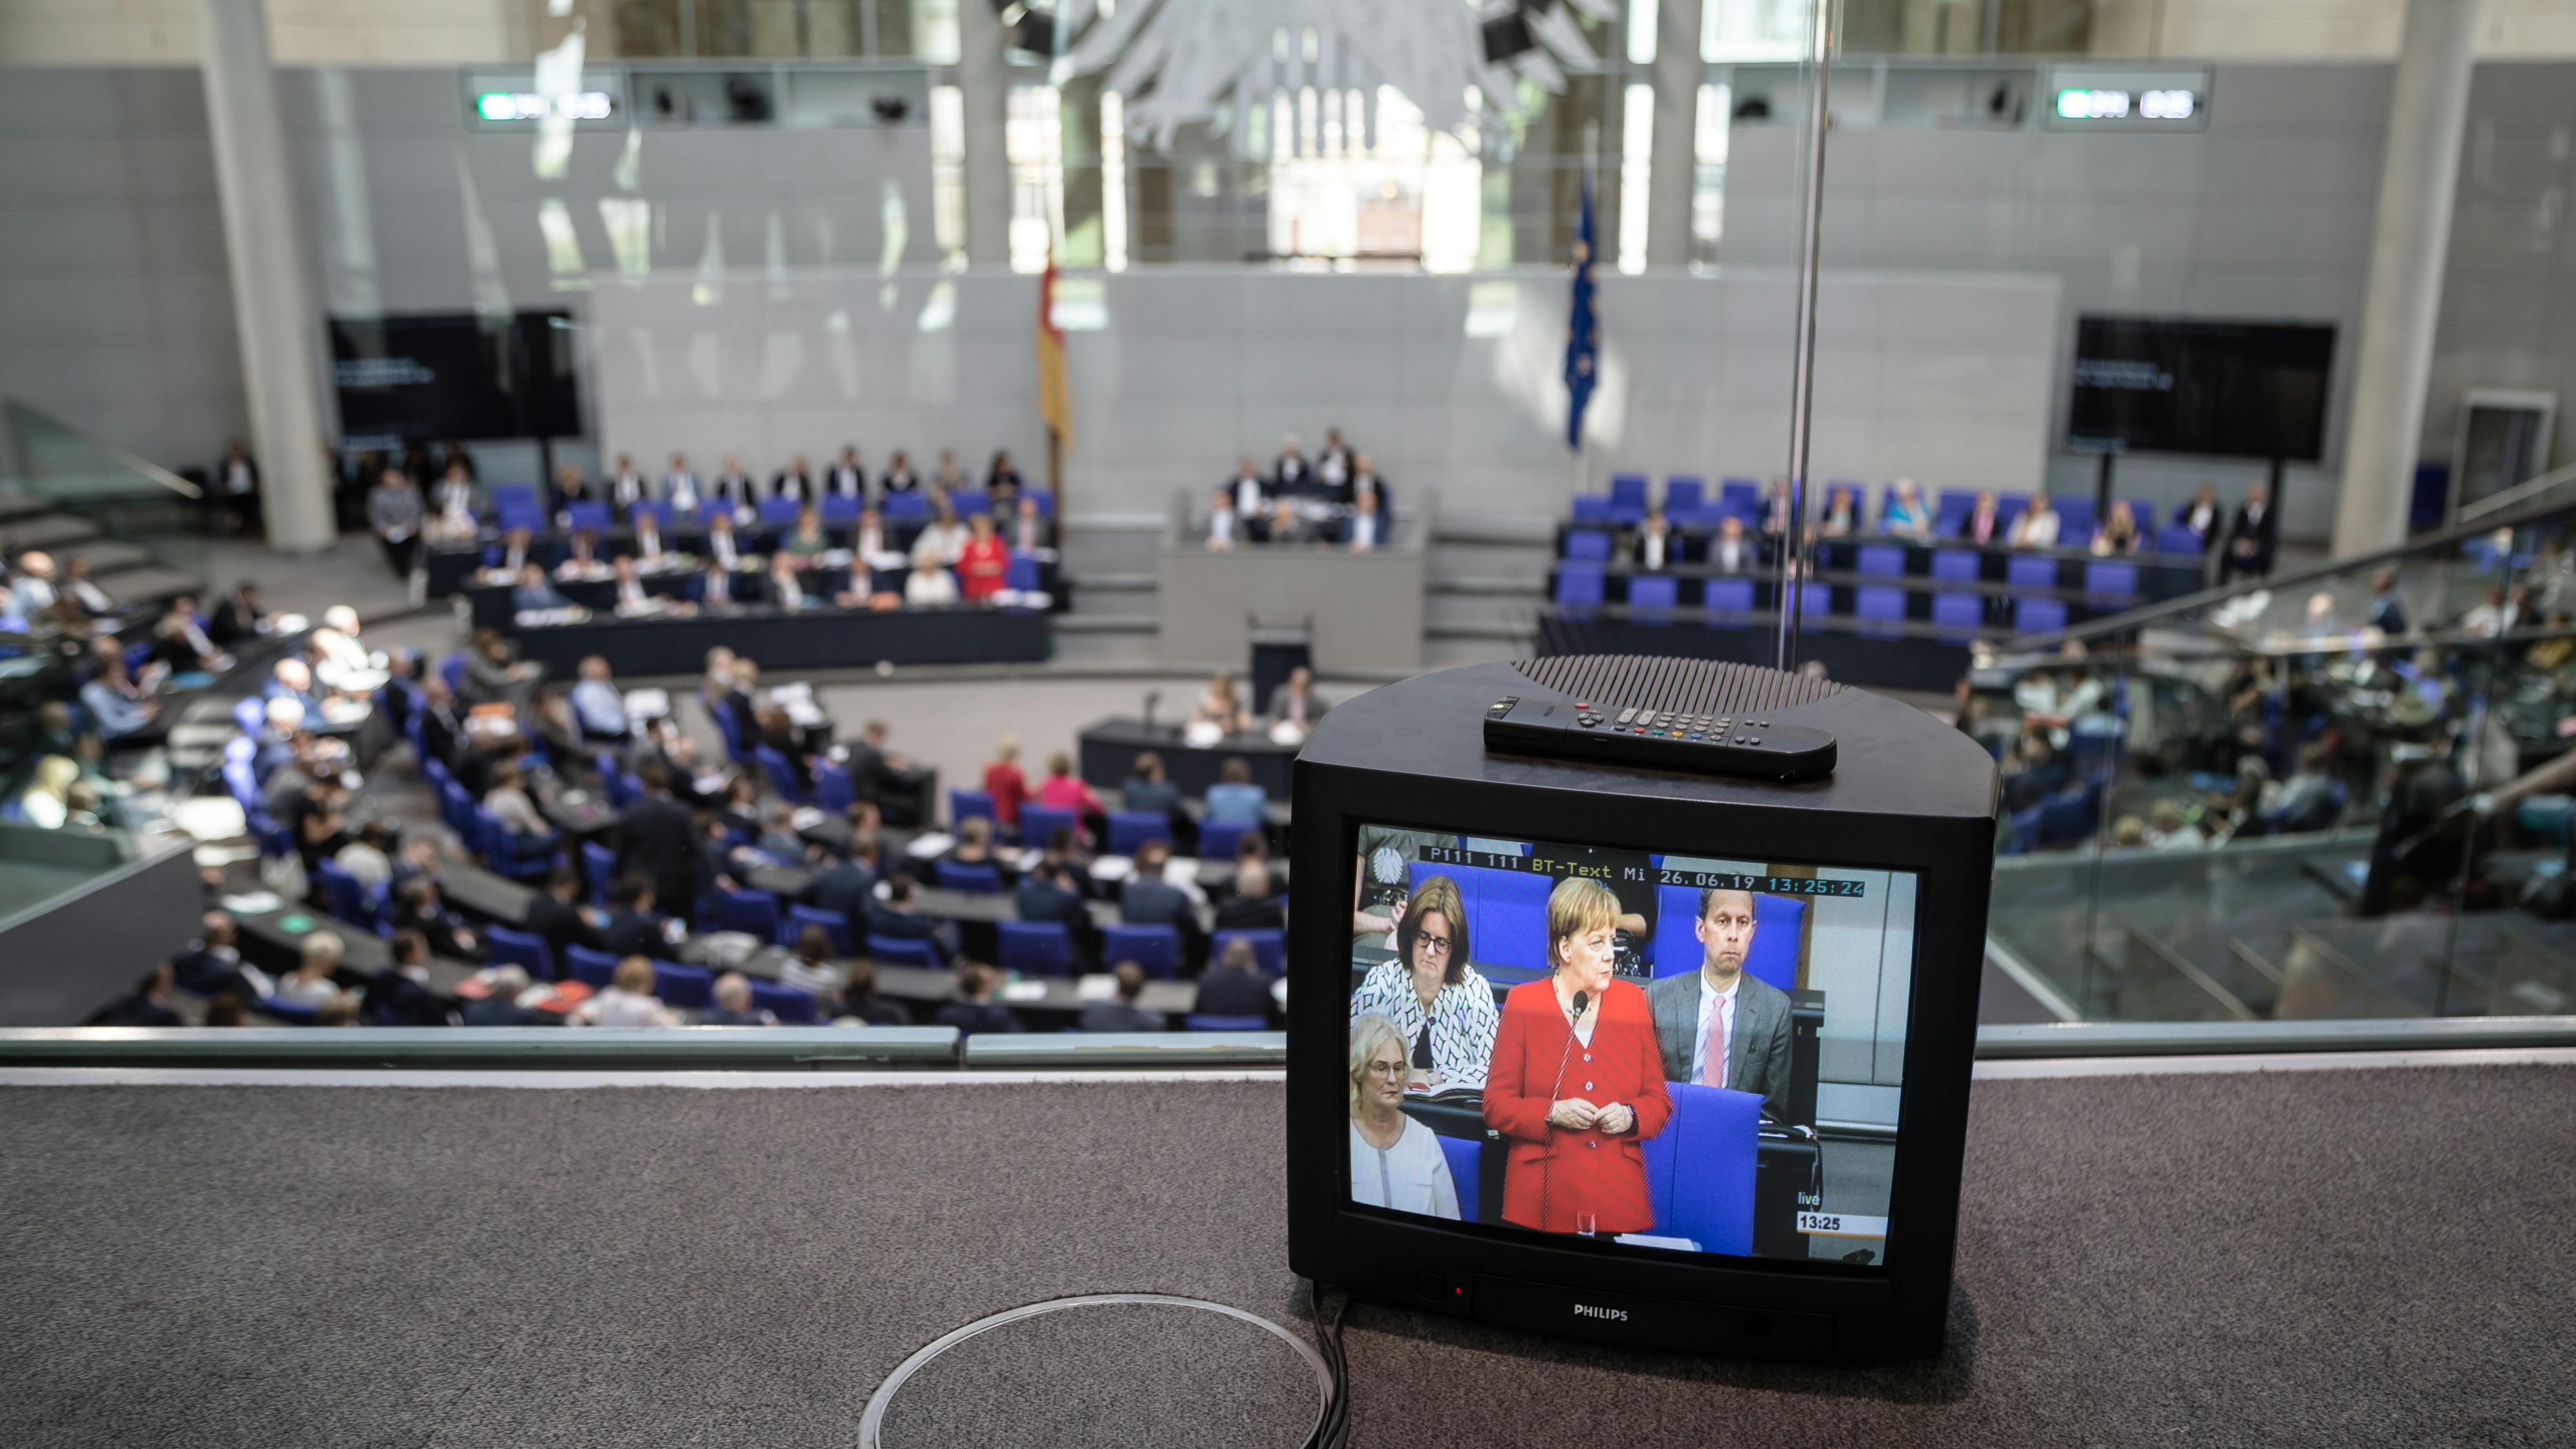 Ein Blick in den Plenarsaal des Bundestages. Im Vordergrund steht ein altmodischer Röhrenfernseher, auf dem Angela Merkel zu sehen ist. Im Hintergrund sitzen Abgeordnete auf den Rängen des Parlaments.